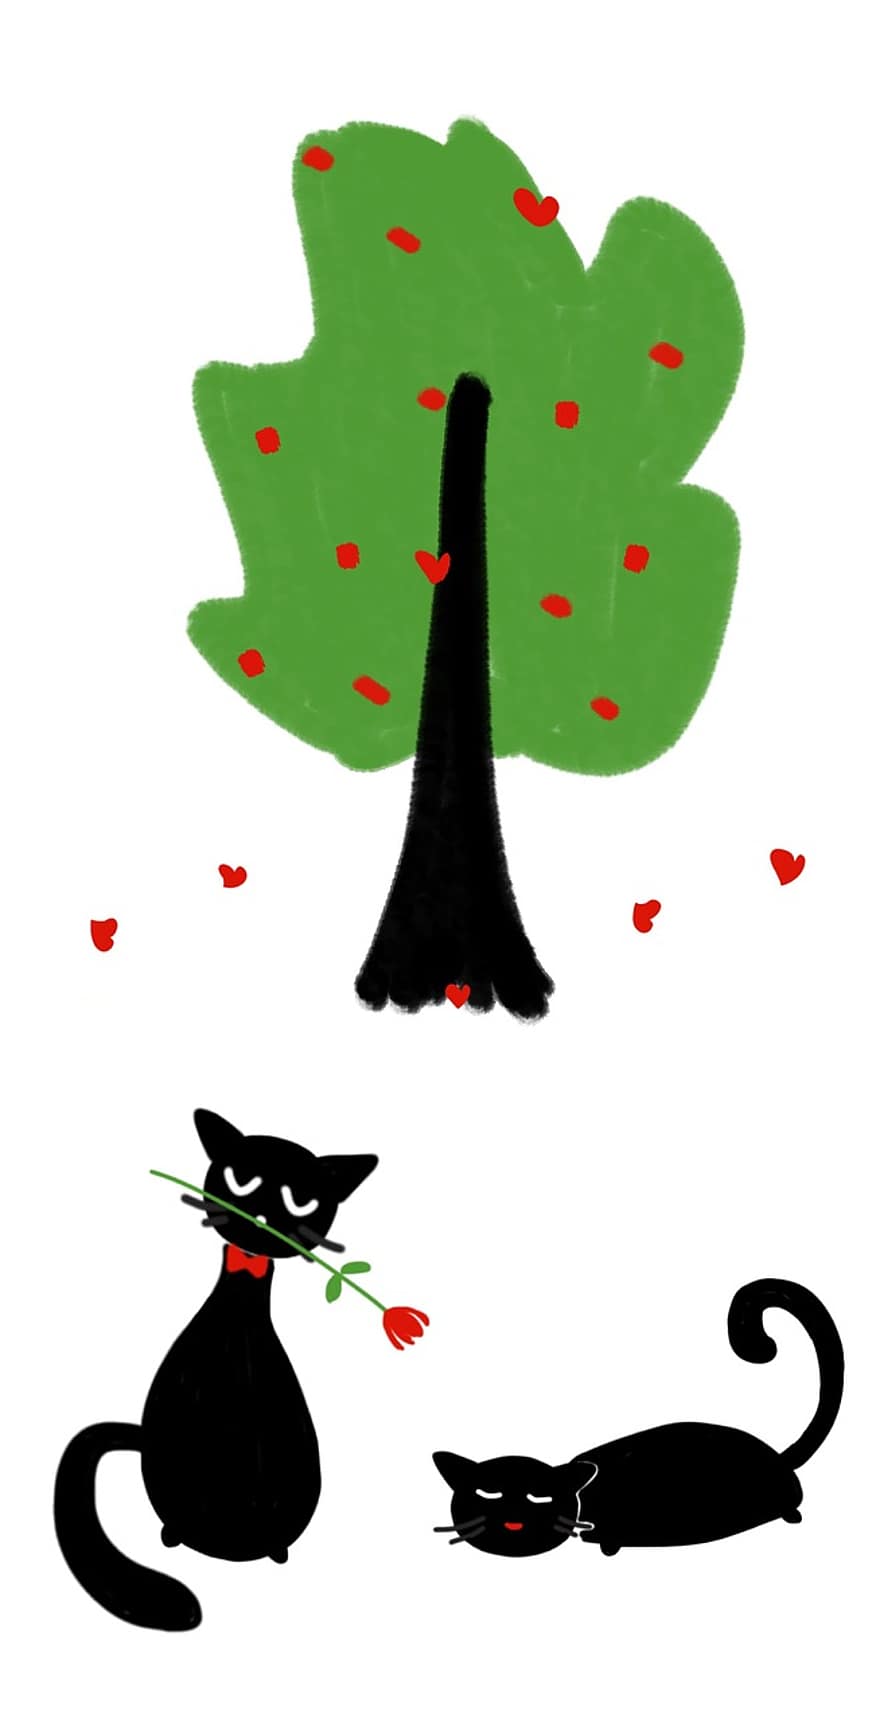 قط ، شجرة ، حب ، عيد الحب ، قلب ، شجرة خضراء ، القطط في الحب ، قطط سوداء ، الوردة ، زهرة ، رومانسي